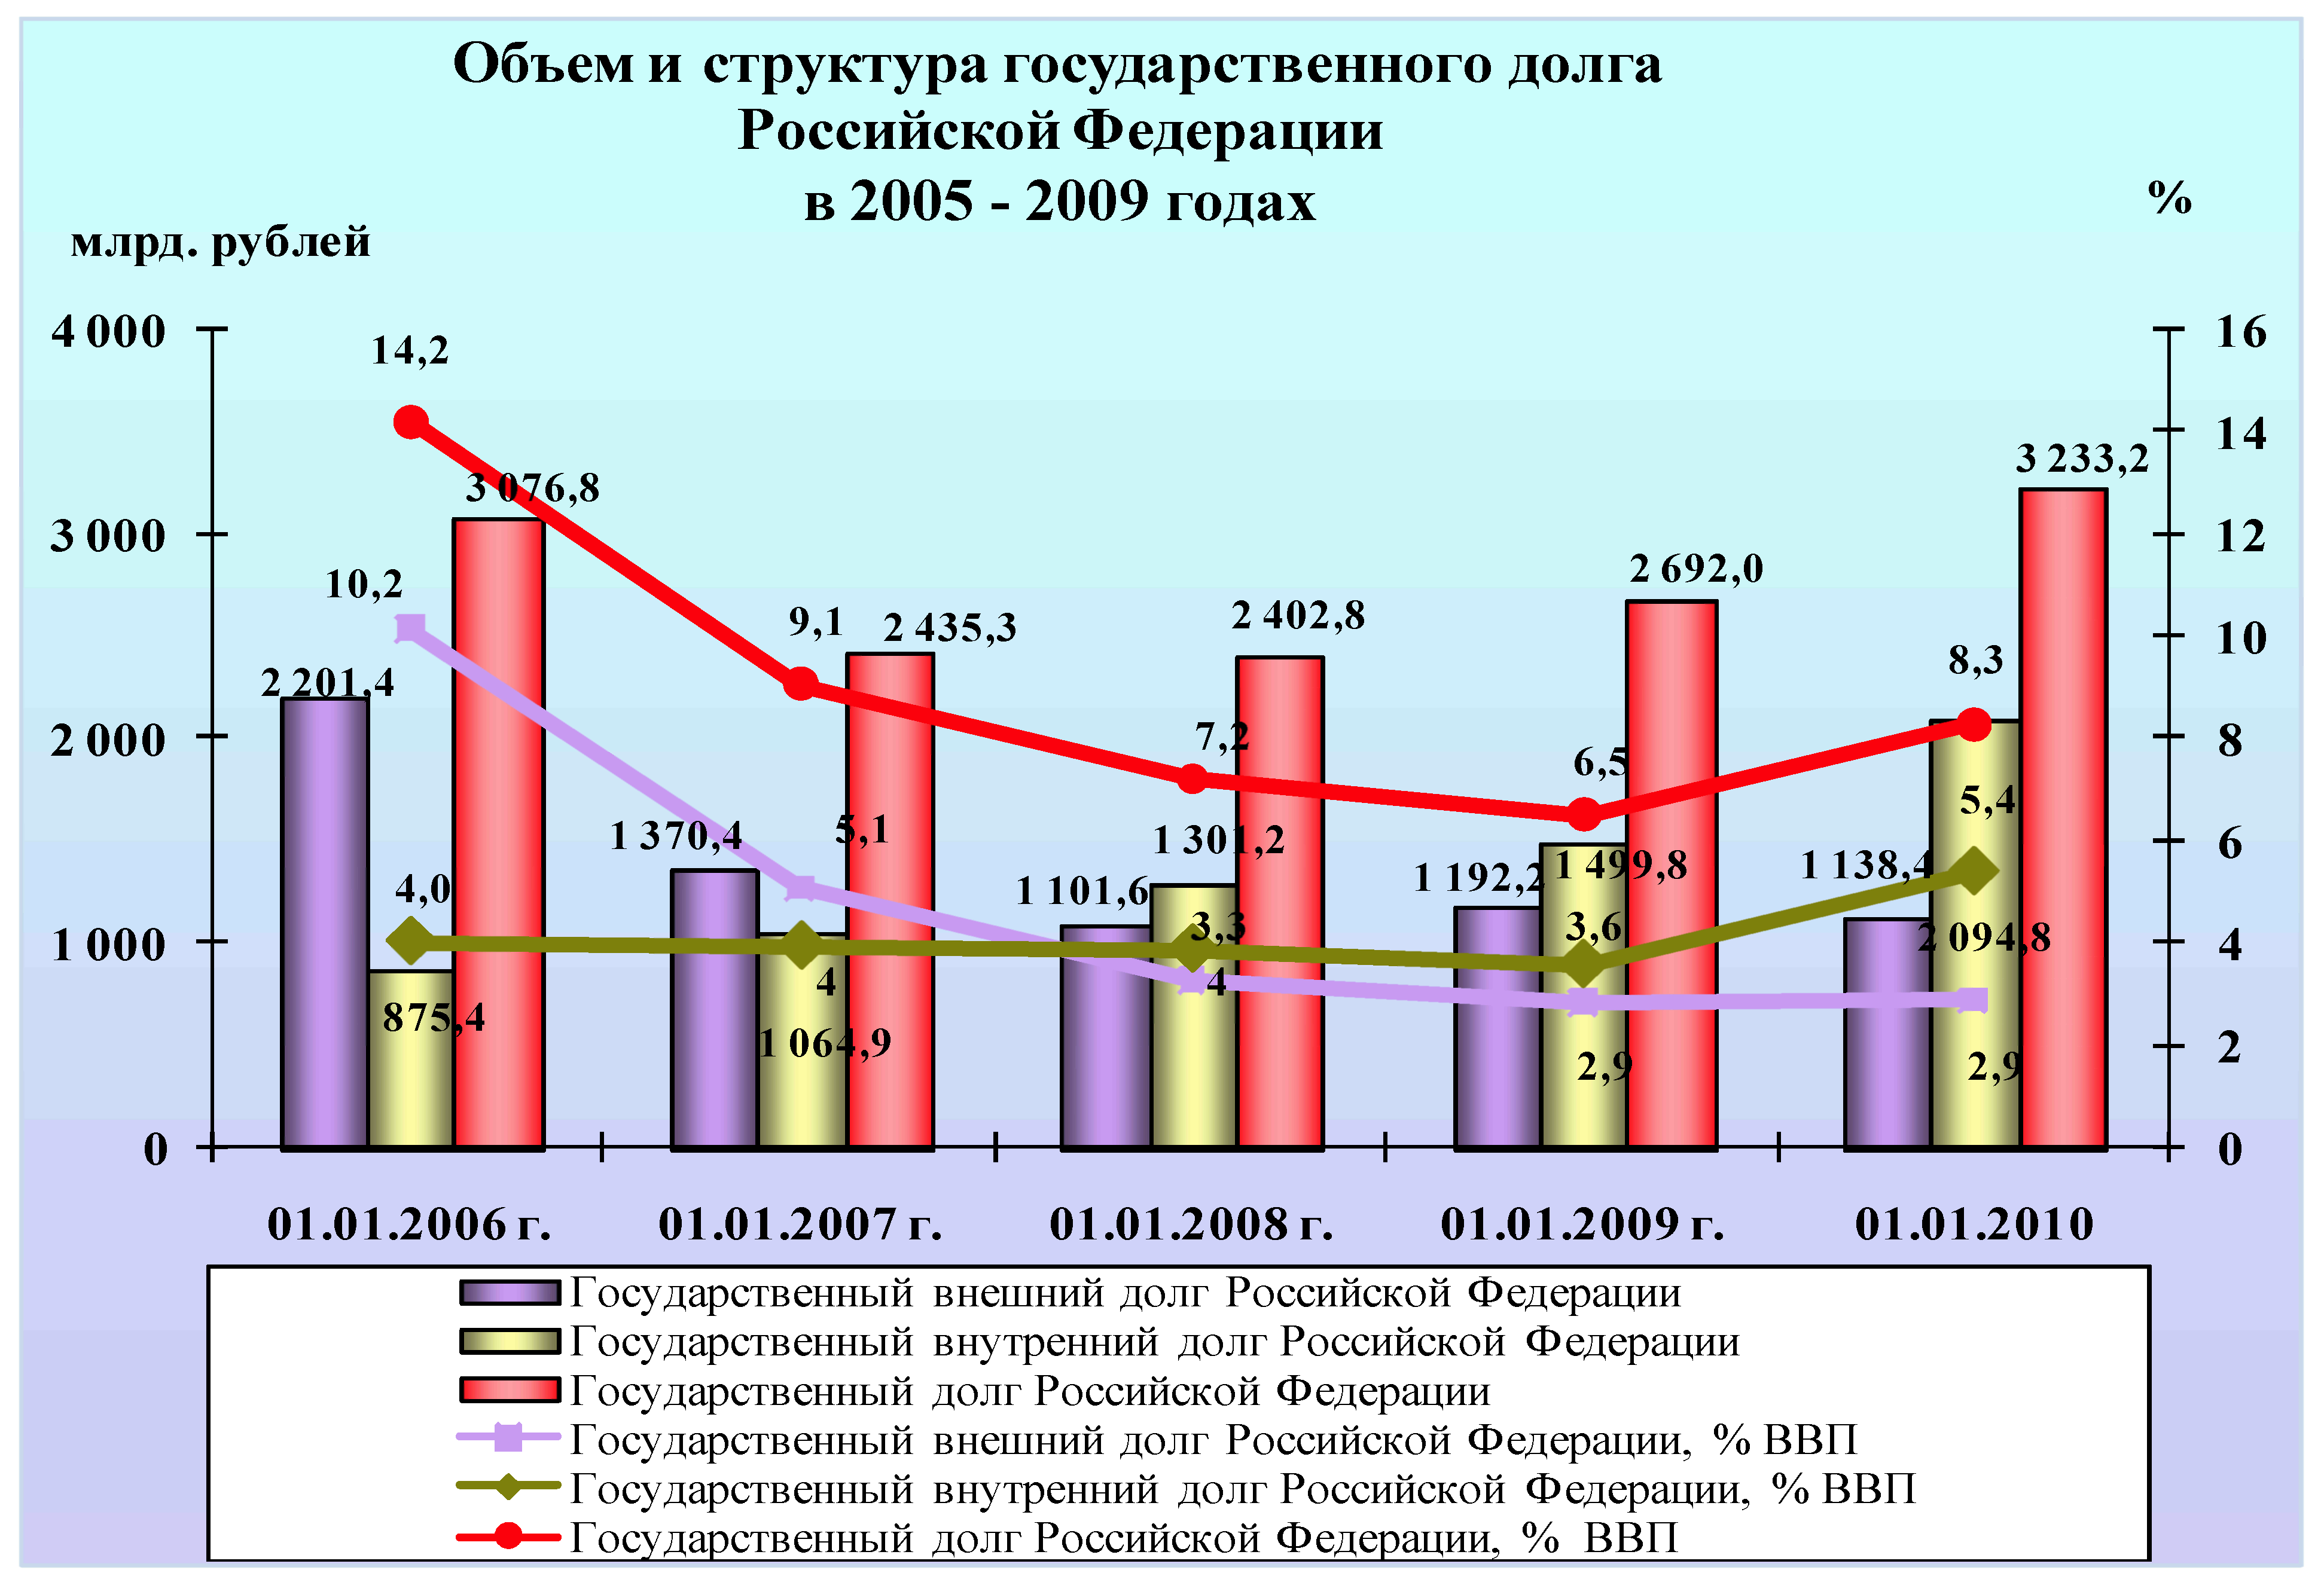 структура государственного долга России